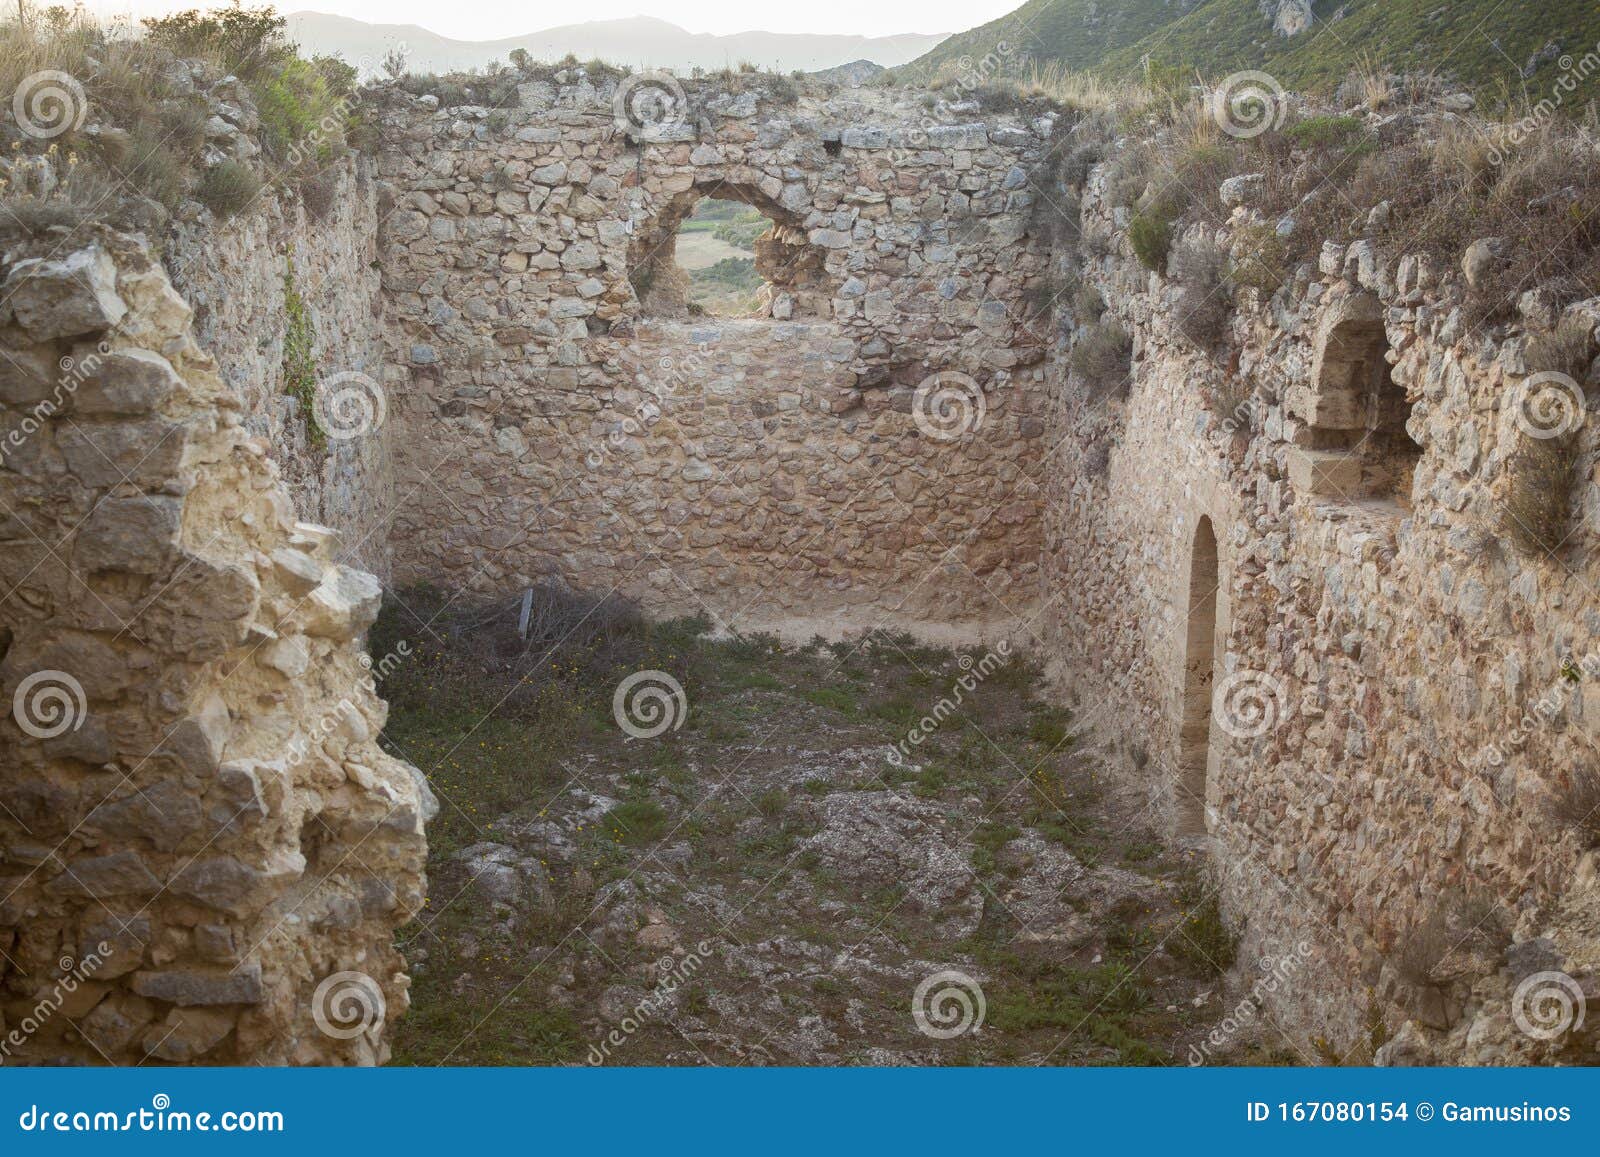 ocio castle, on de lanos mountain, ruins of a medieval castle